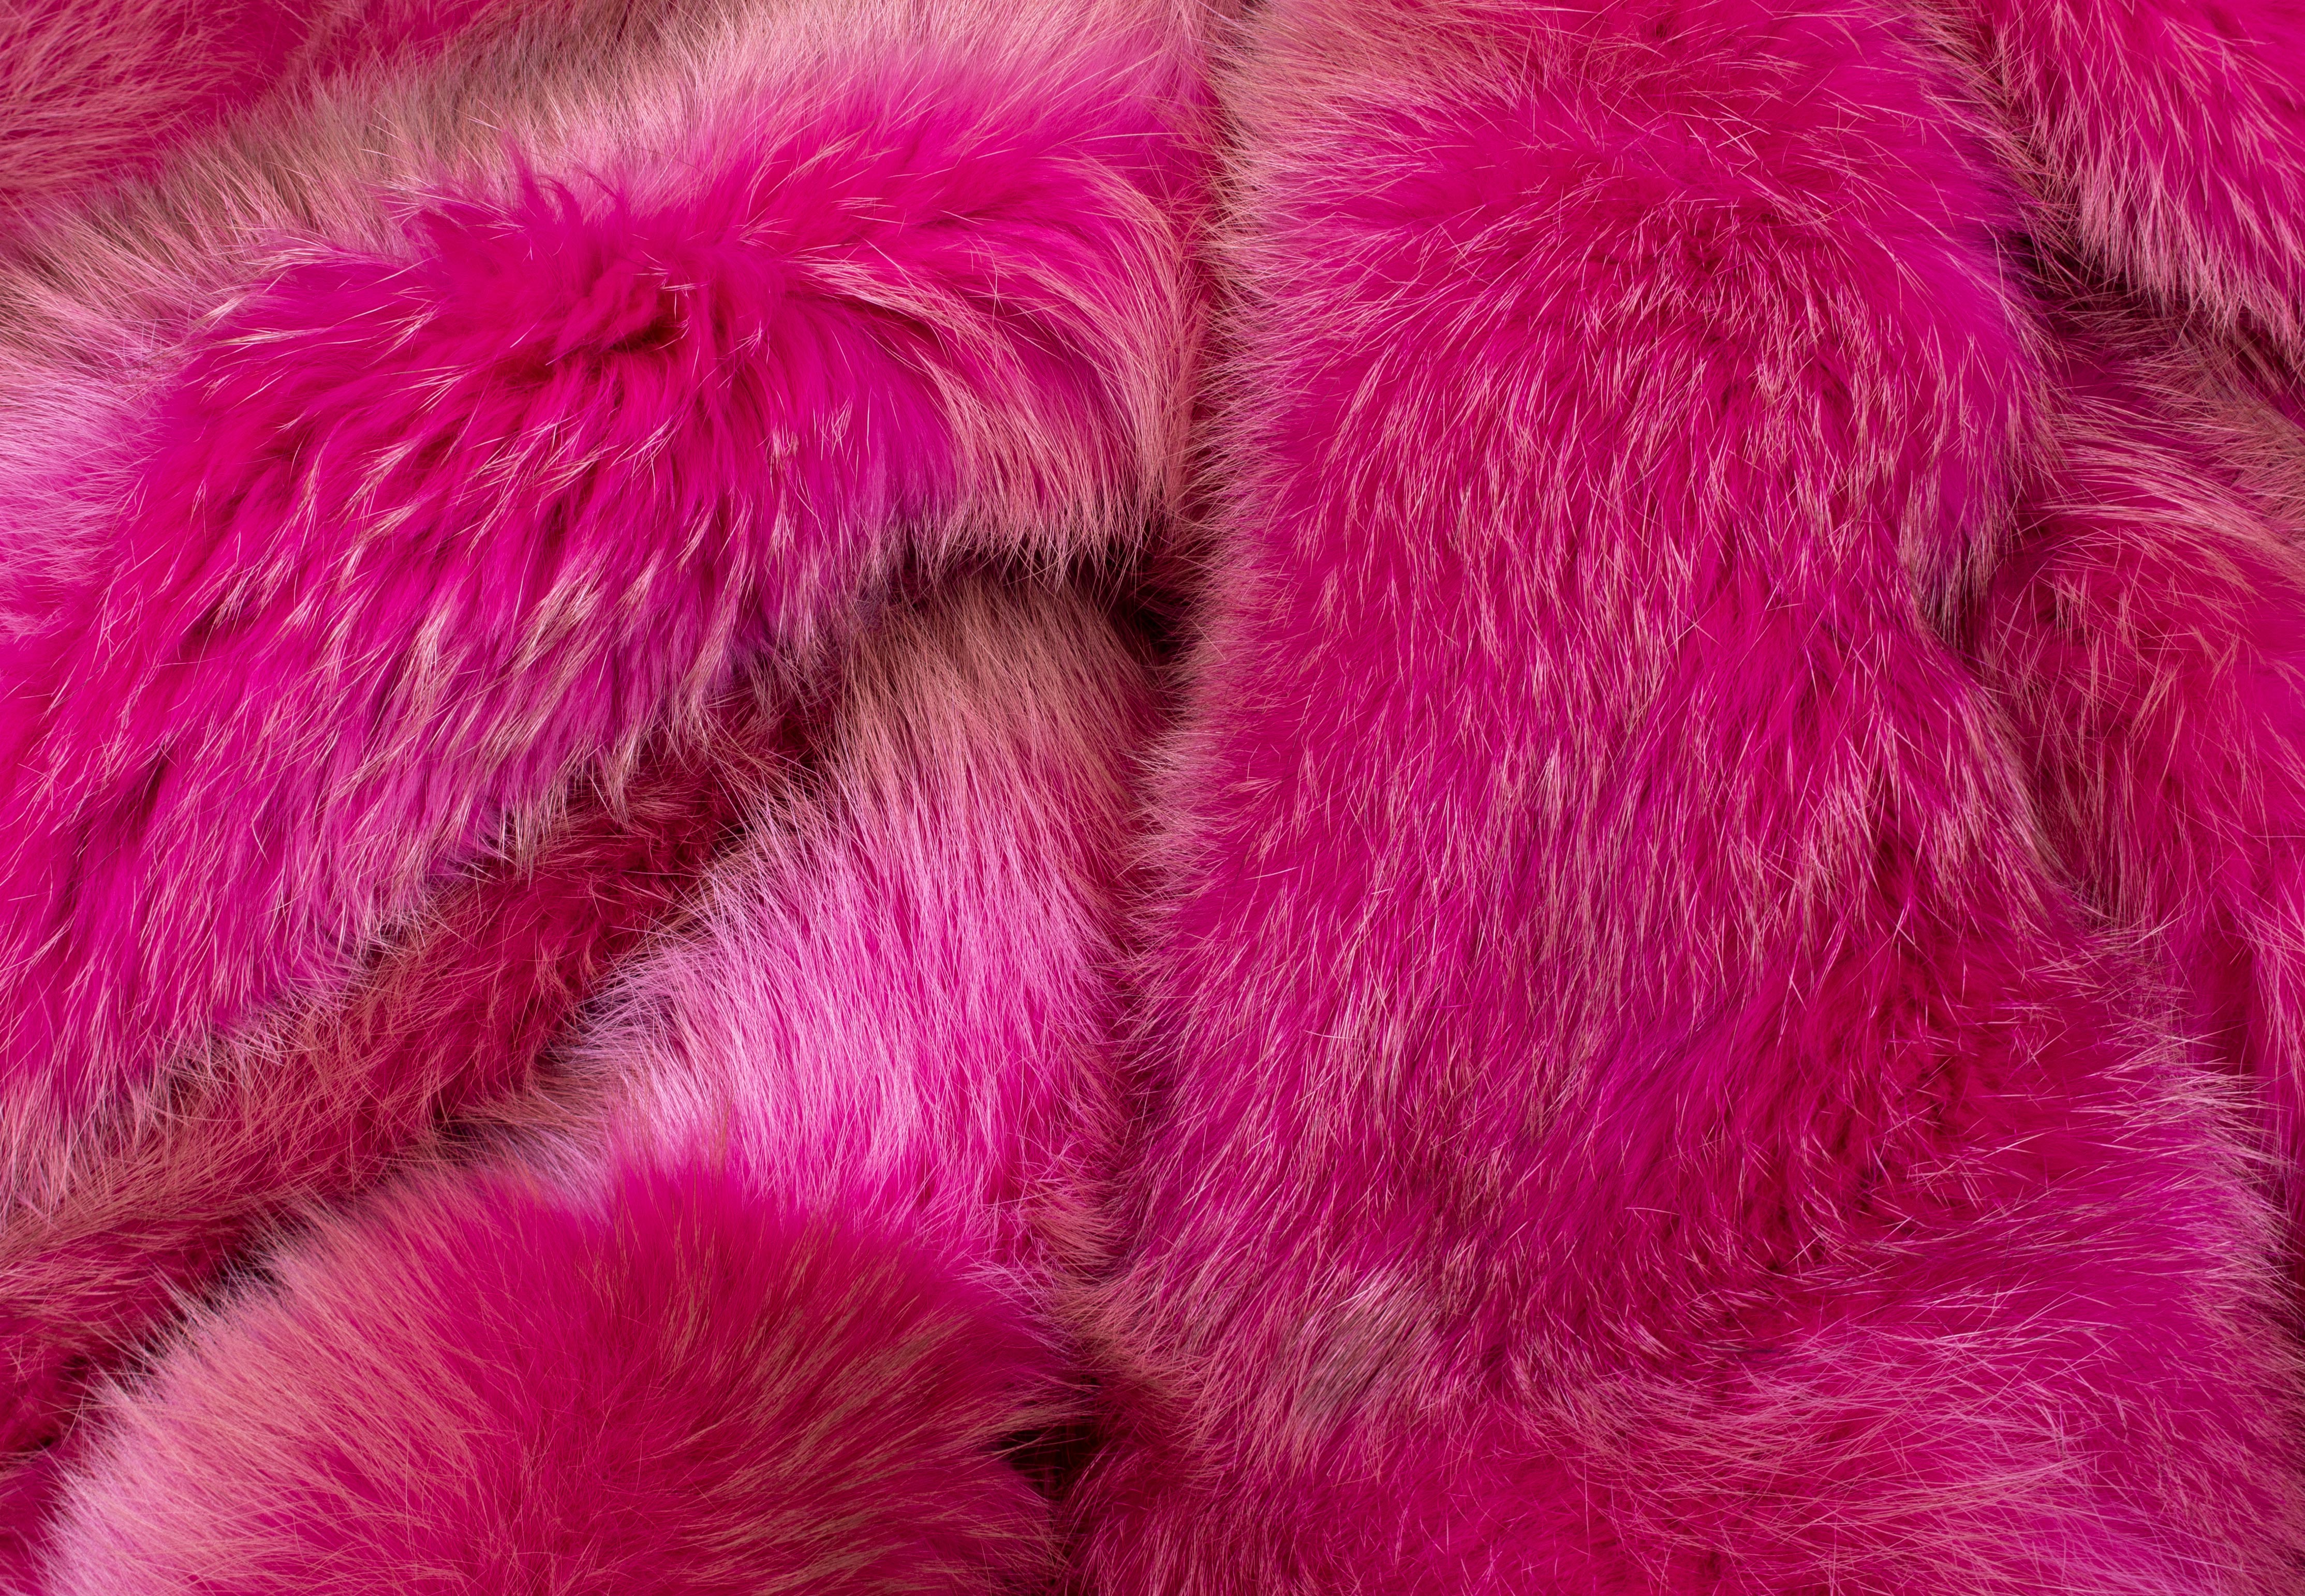 Red Fox Fur Blanket in pink